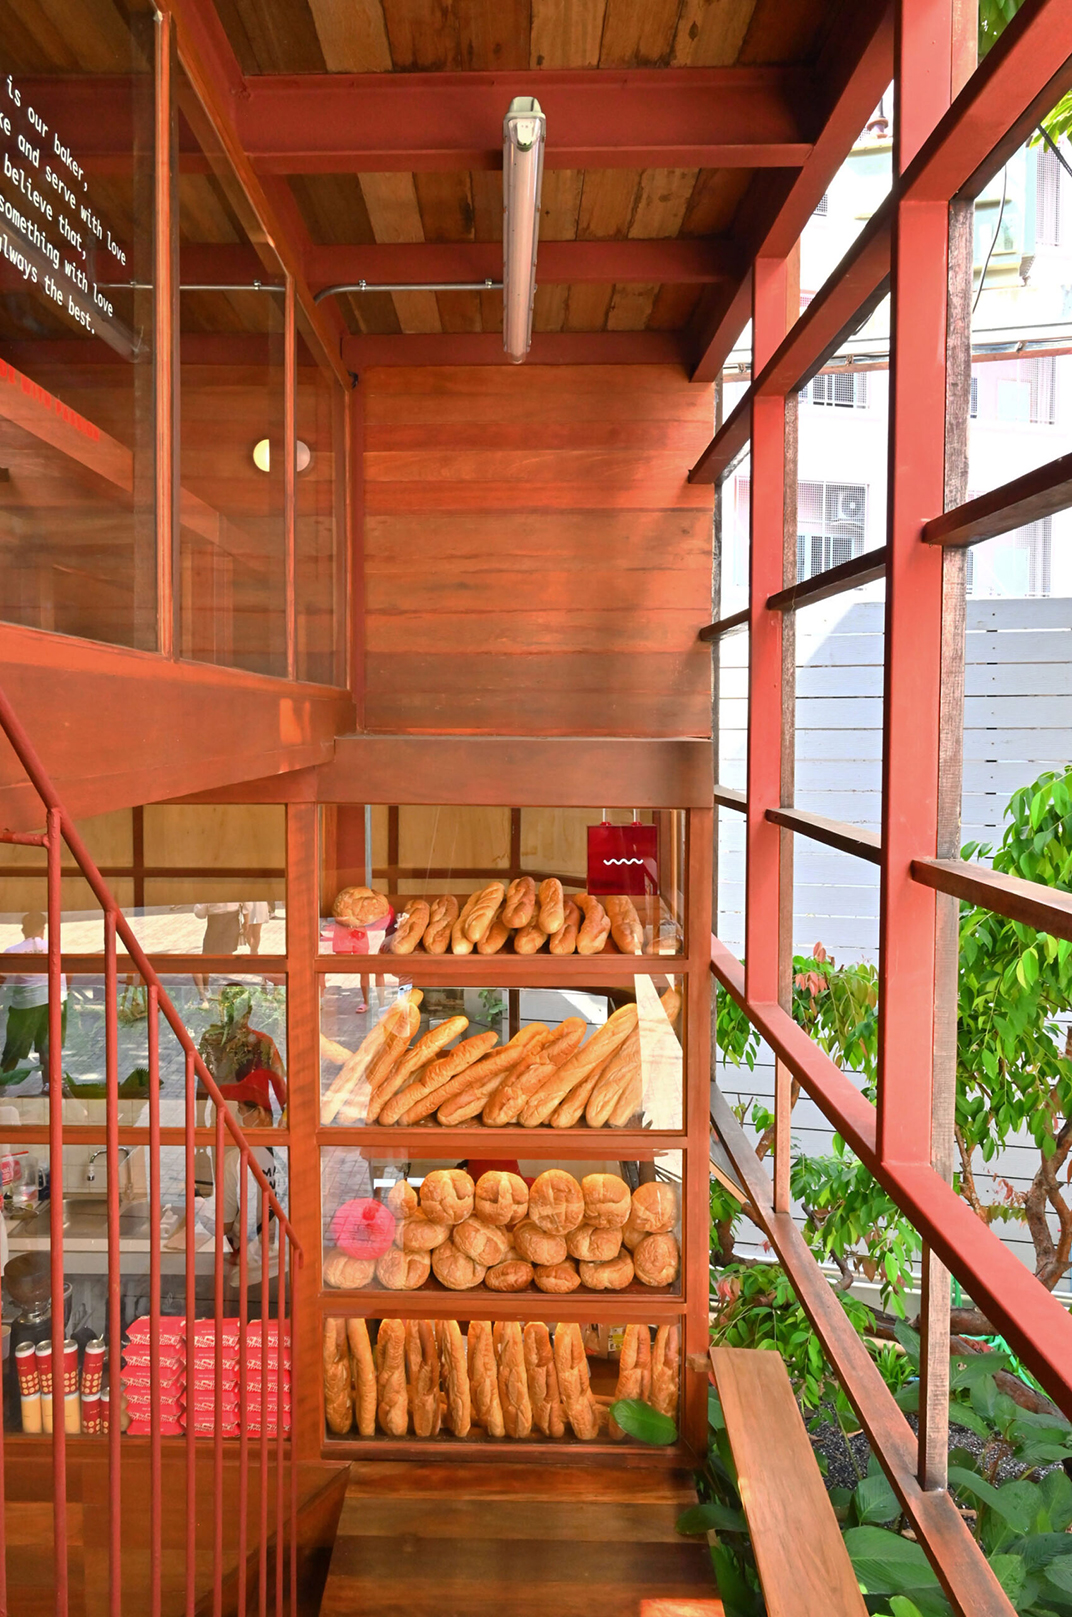 用回收木材包裹的面包店咖啡店 北京 上海 成都 武汉 杭州 广州 澳门 logo设计 vi设计 空间设计